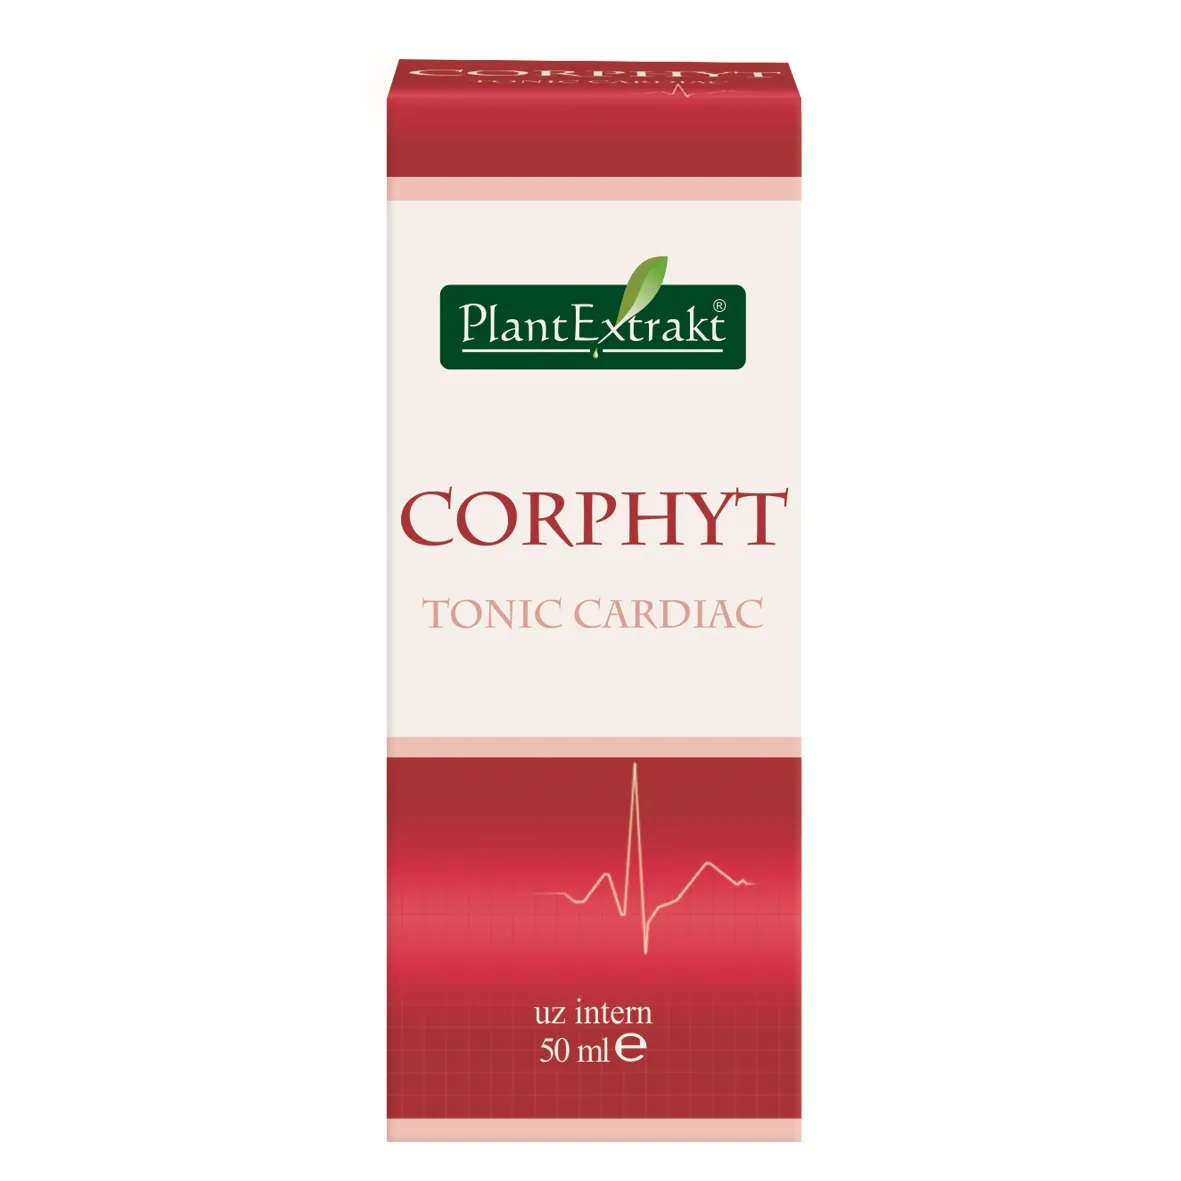 Corphyt, 50ml, PlantExtrakt